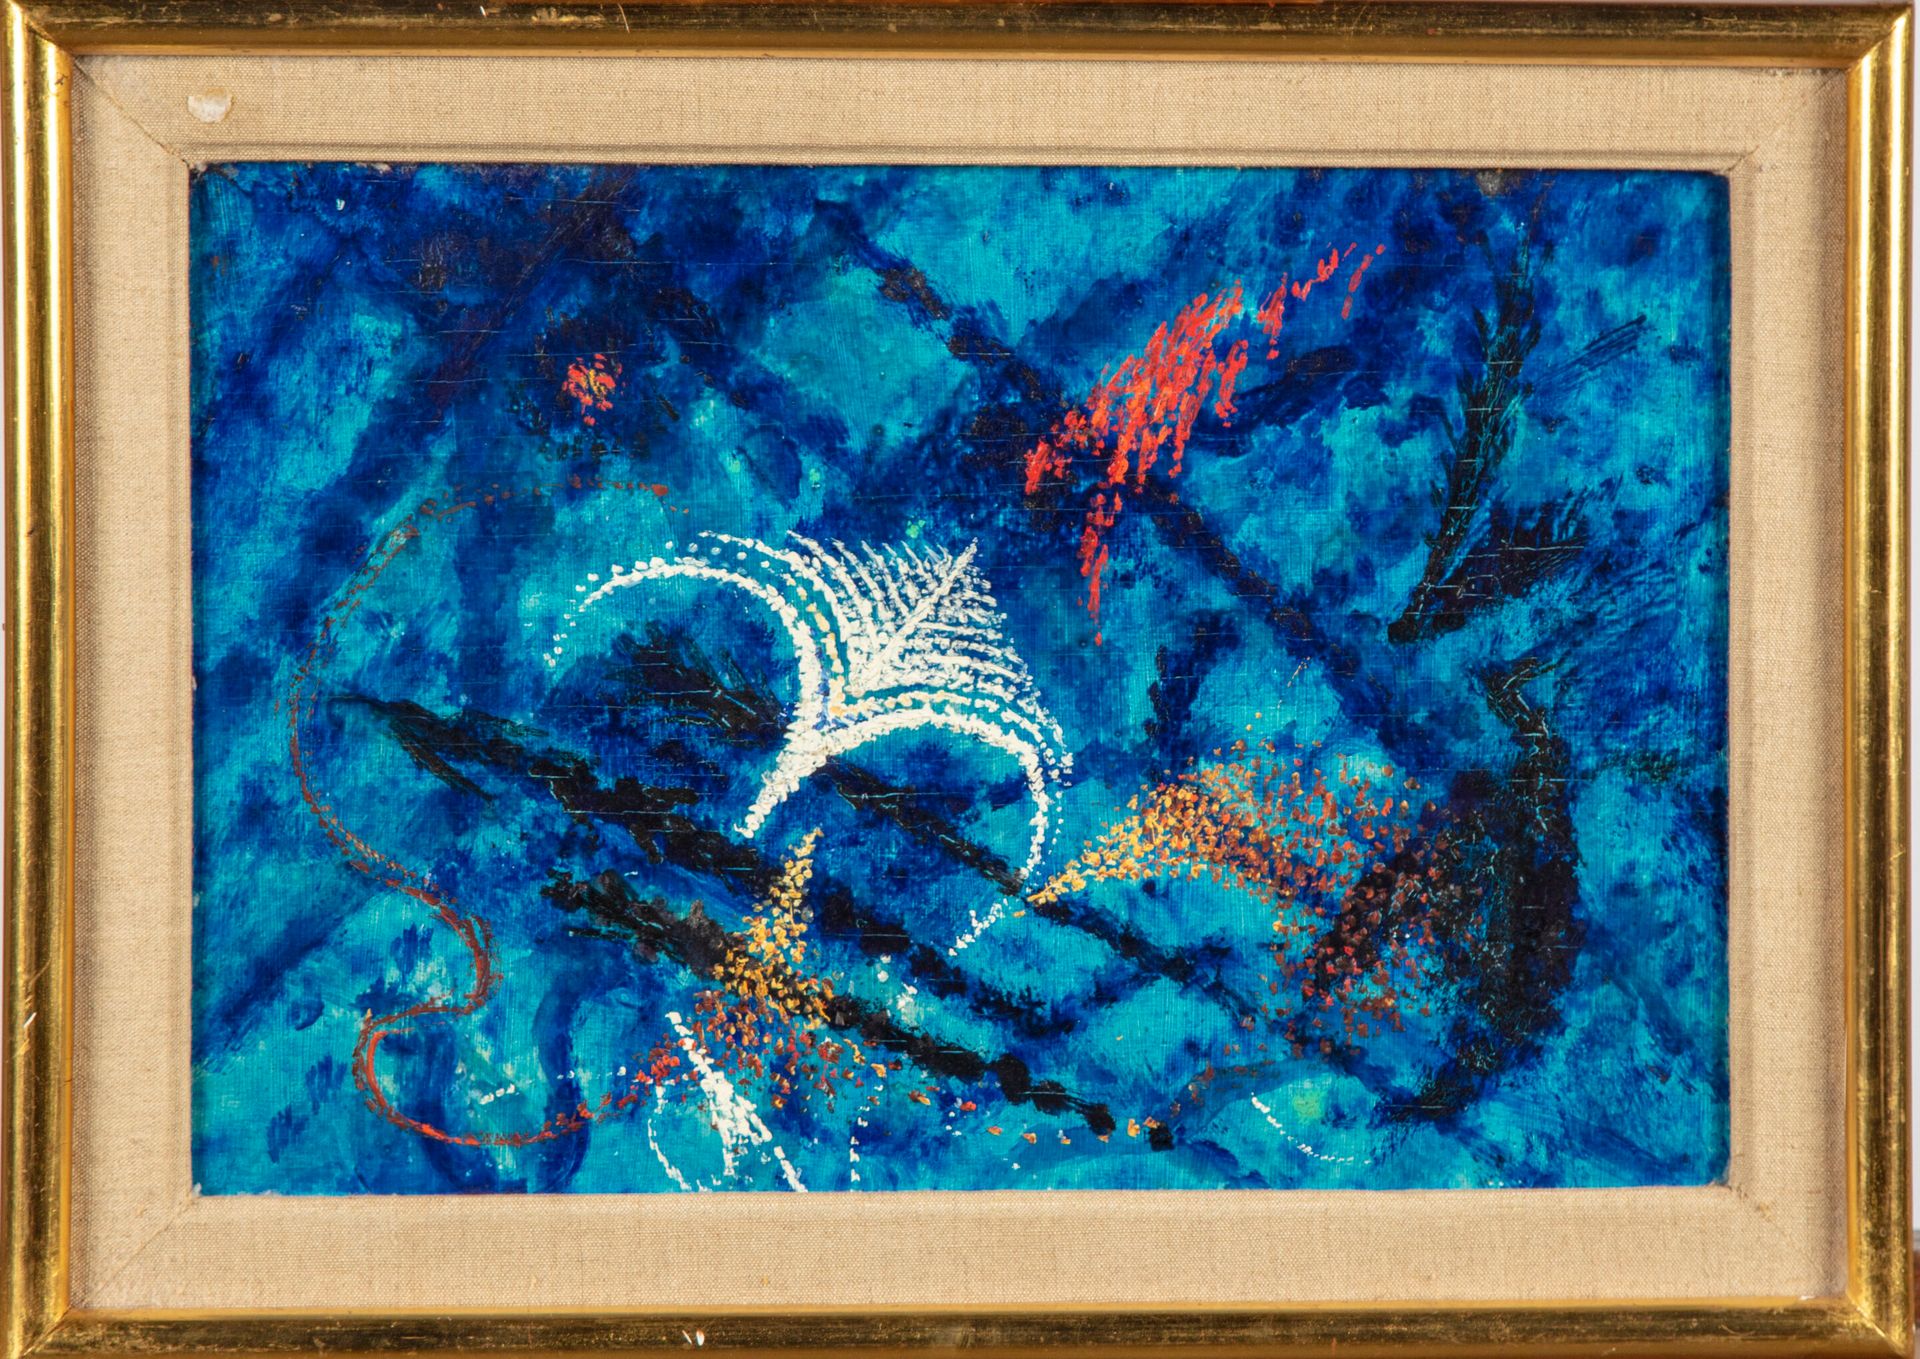 Null SCUOLA MODERNA

Composizione su sfondo blu

Olio su pannello

22,5 x 33 cm